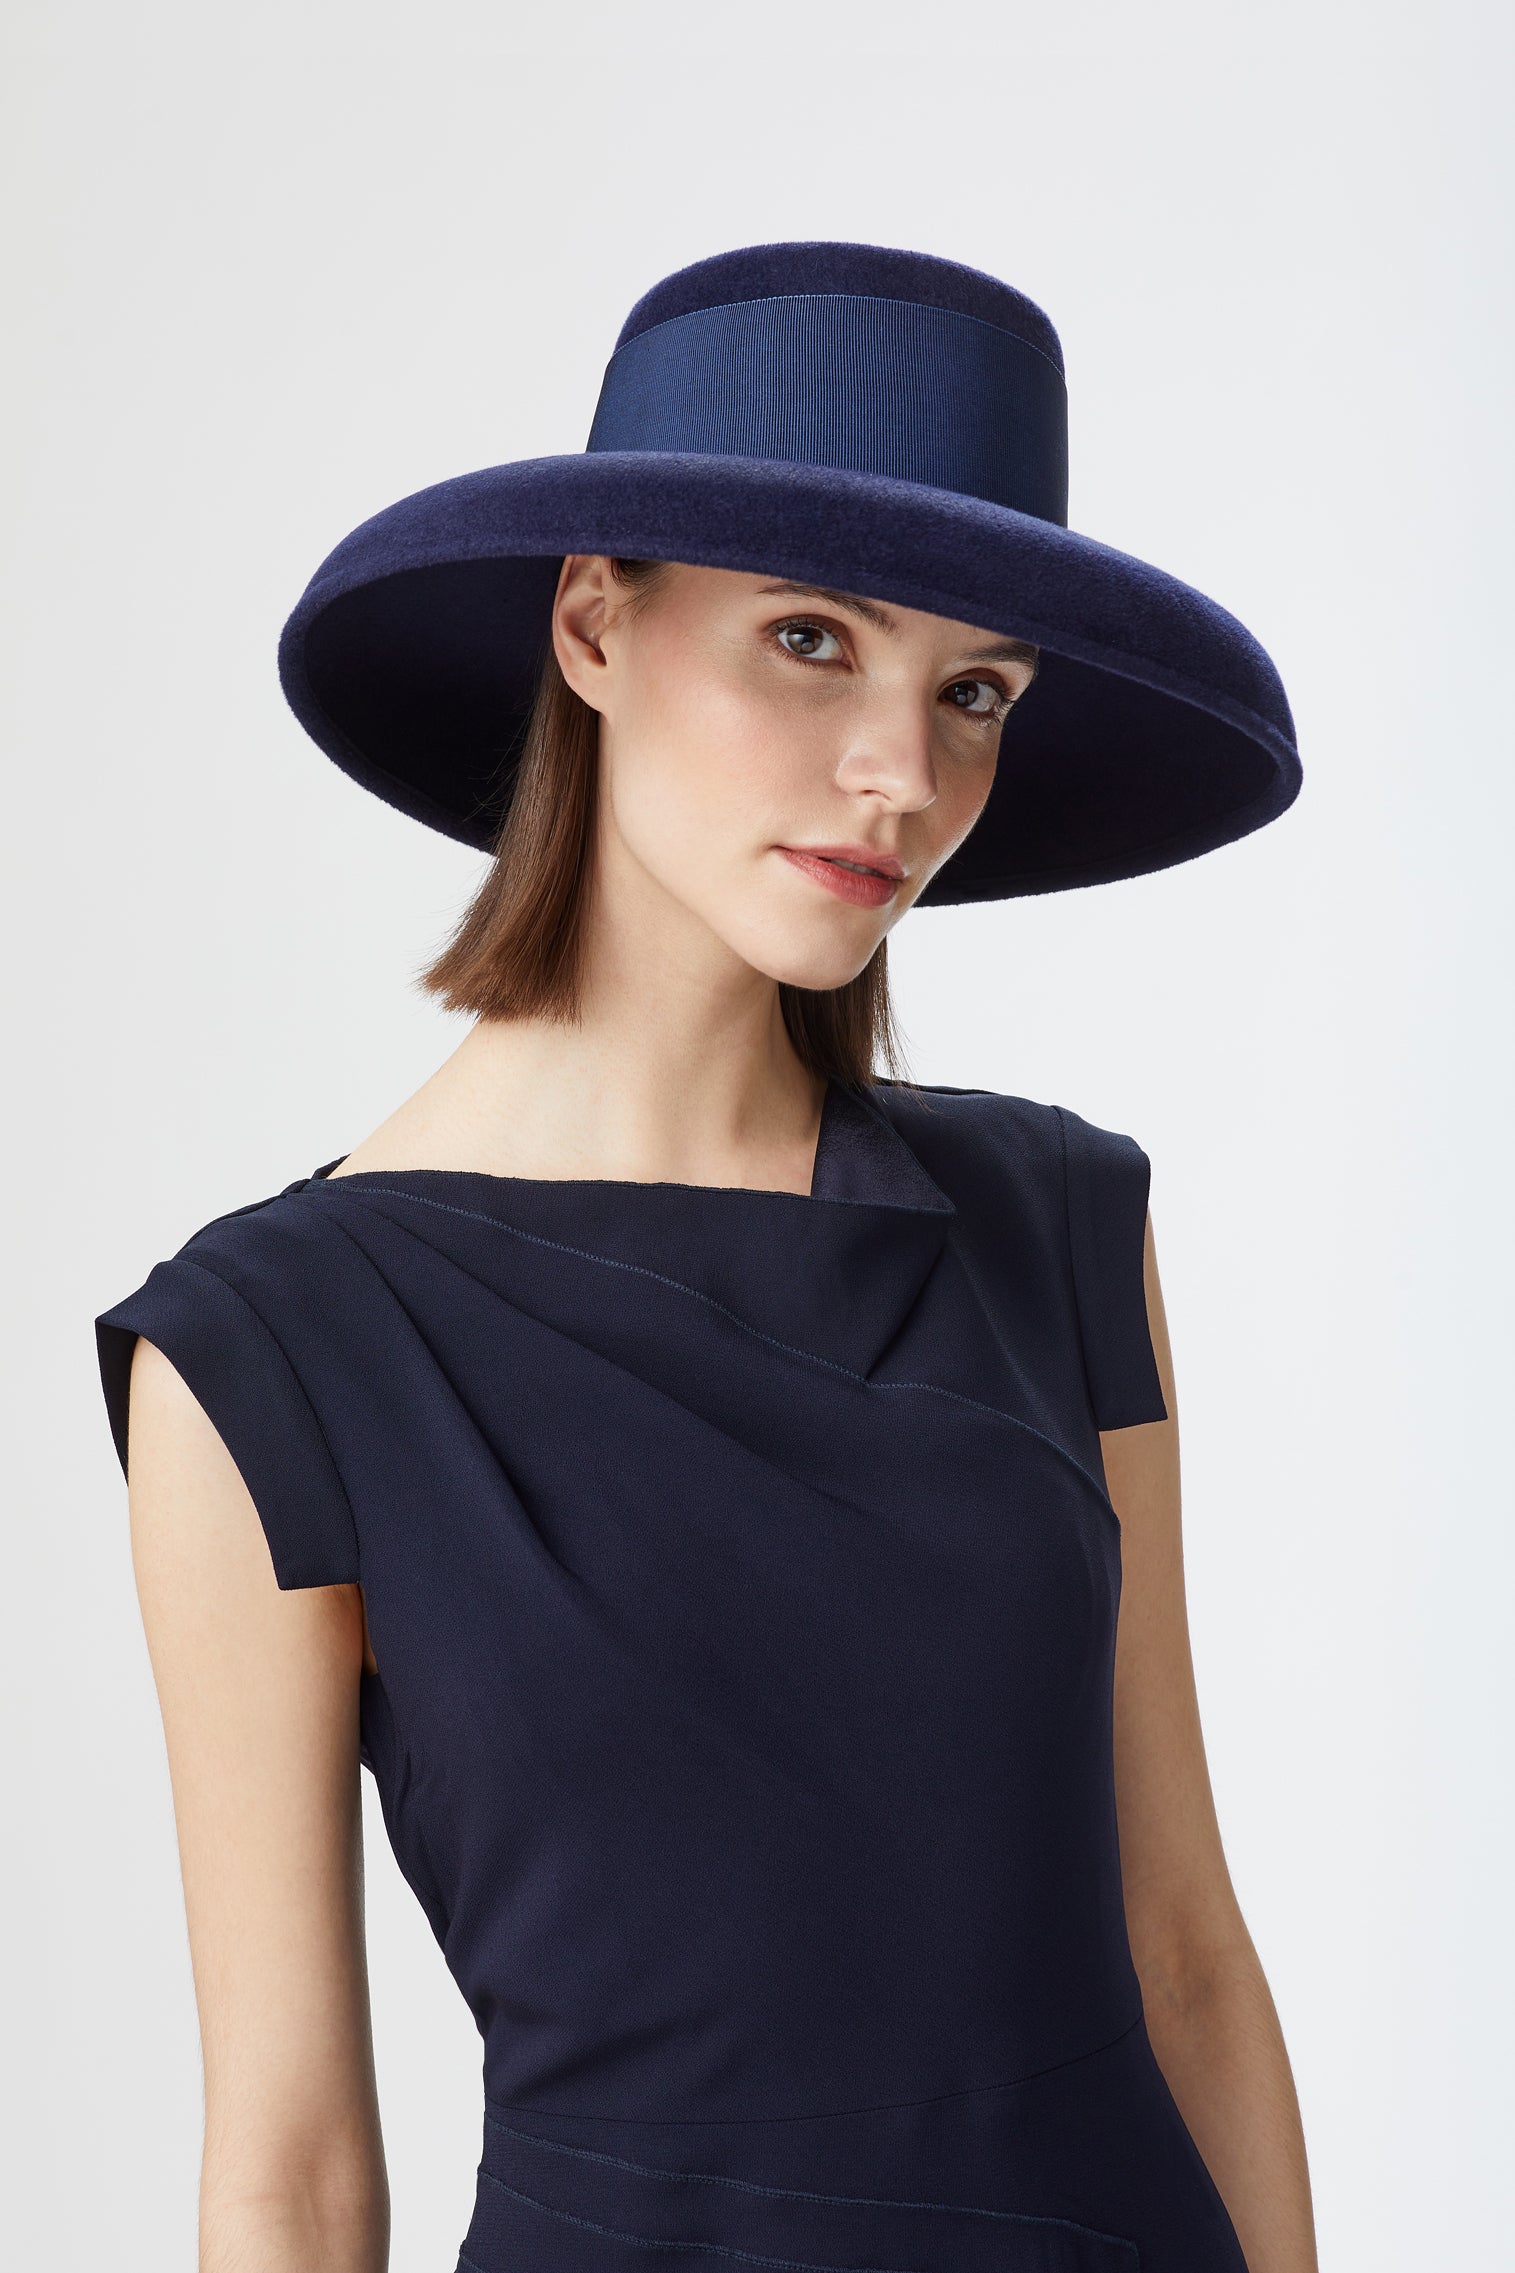 Tiffany Drop-Brim Hat - All Ready to Wear - Lock & Co. Hatters London UK